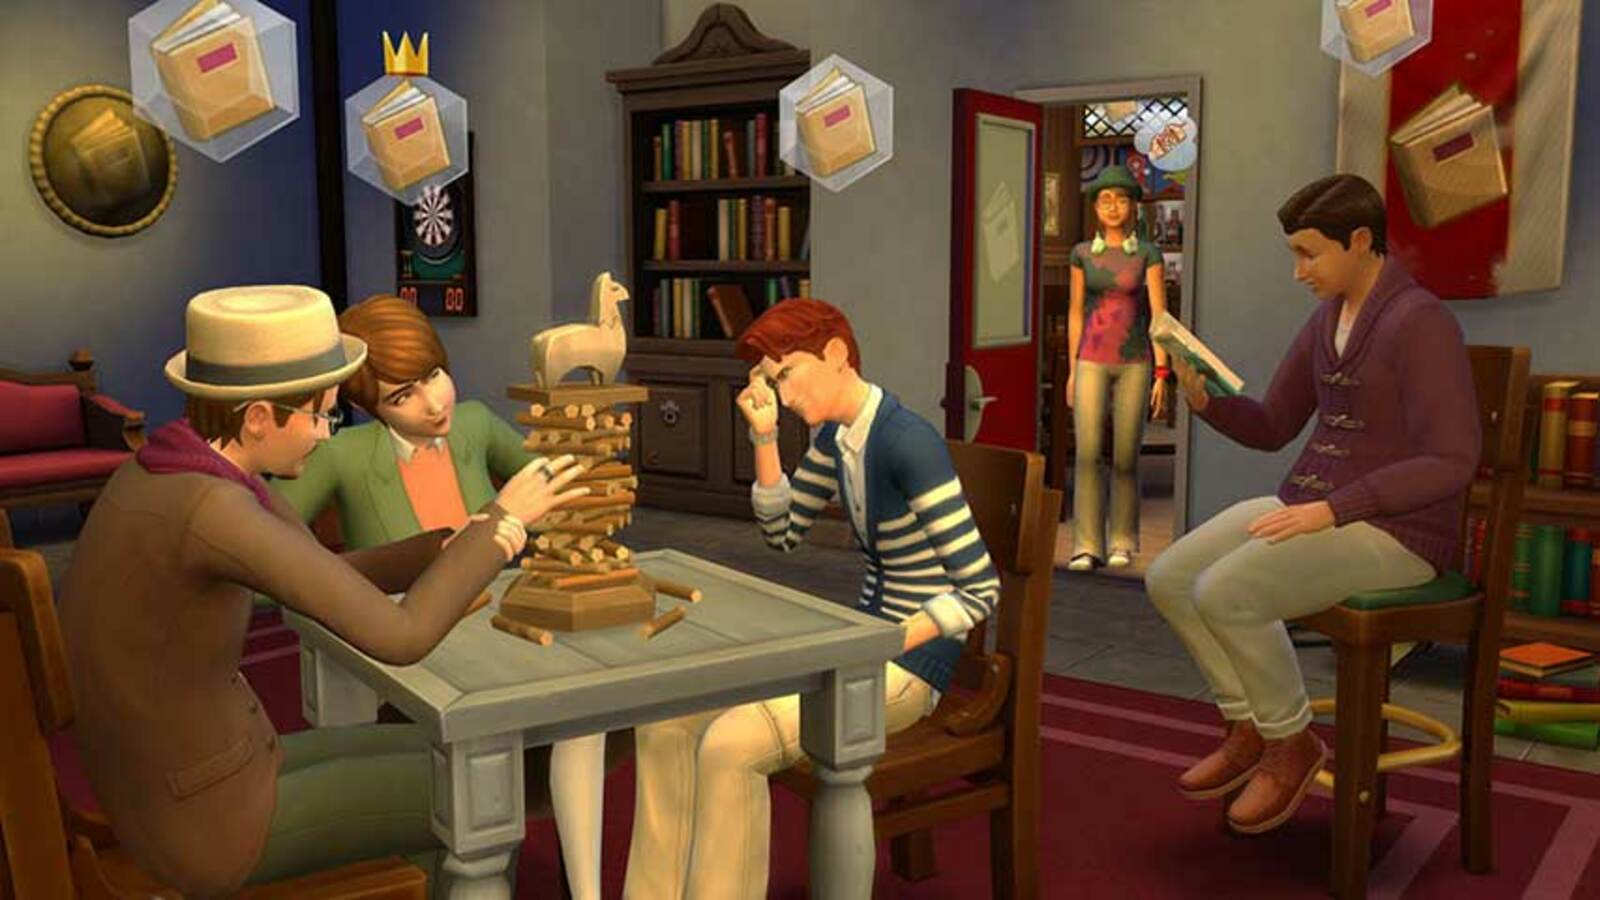 La dernière mise à jour de la politique des Sims 4 sévit contre le contenu et les mods personnalisés payants